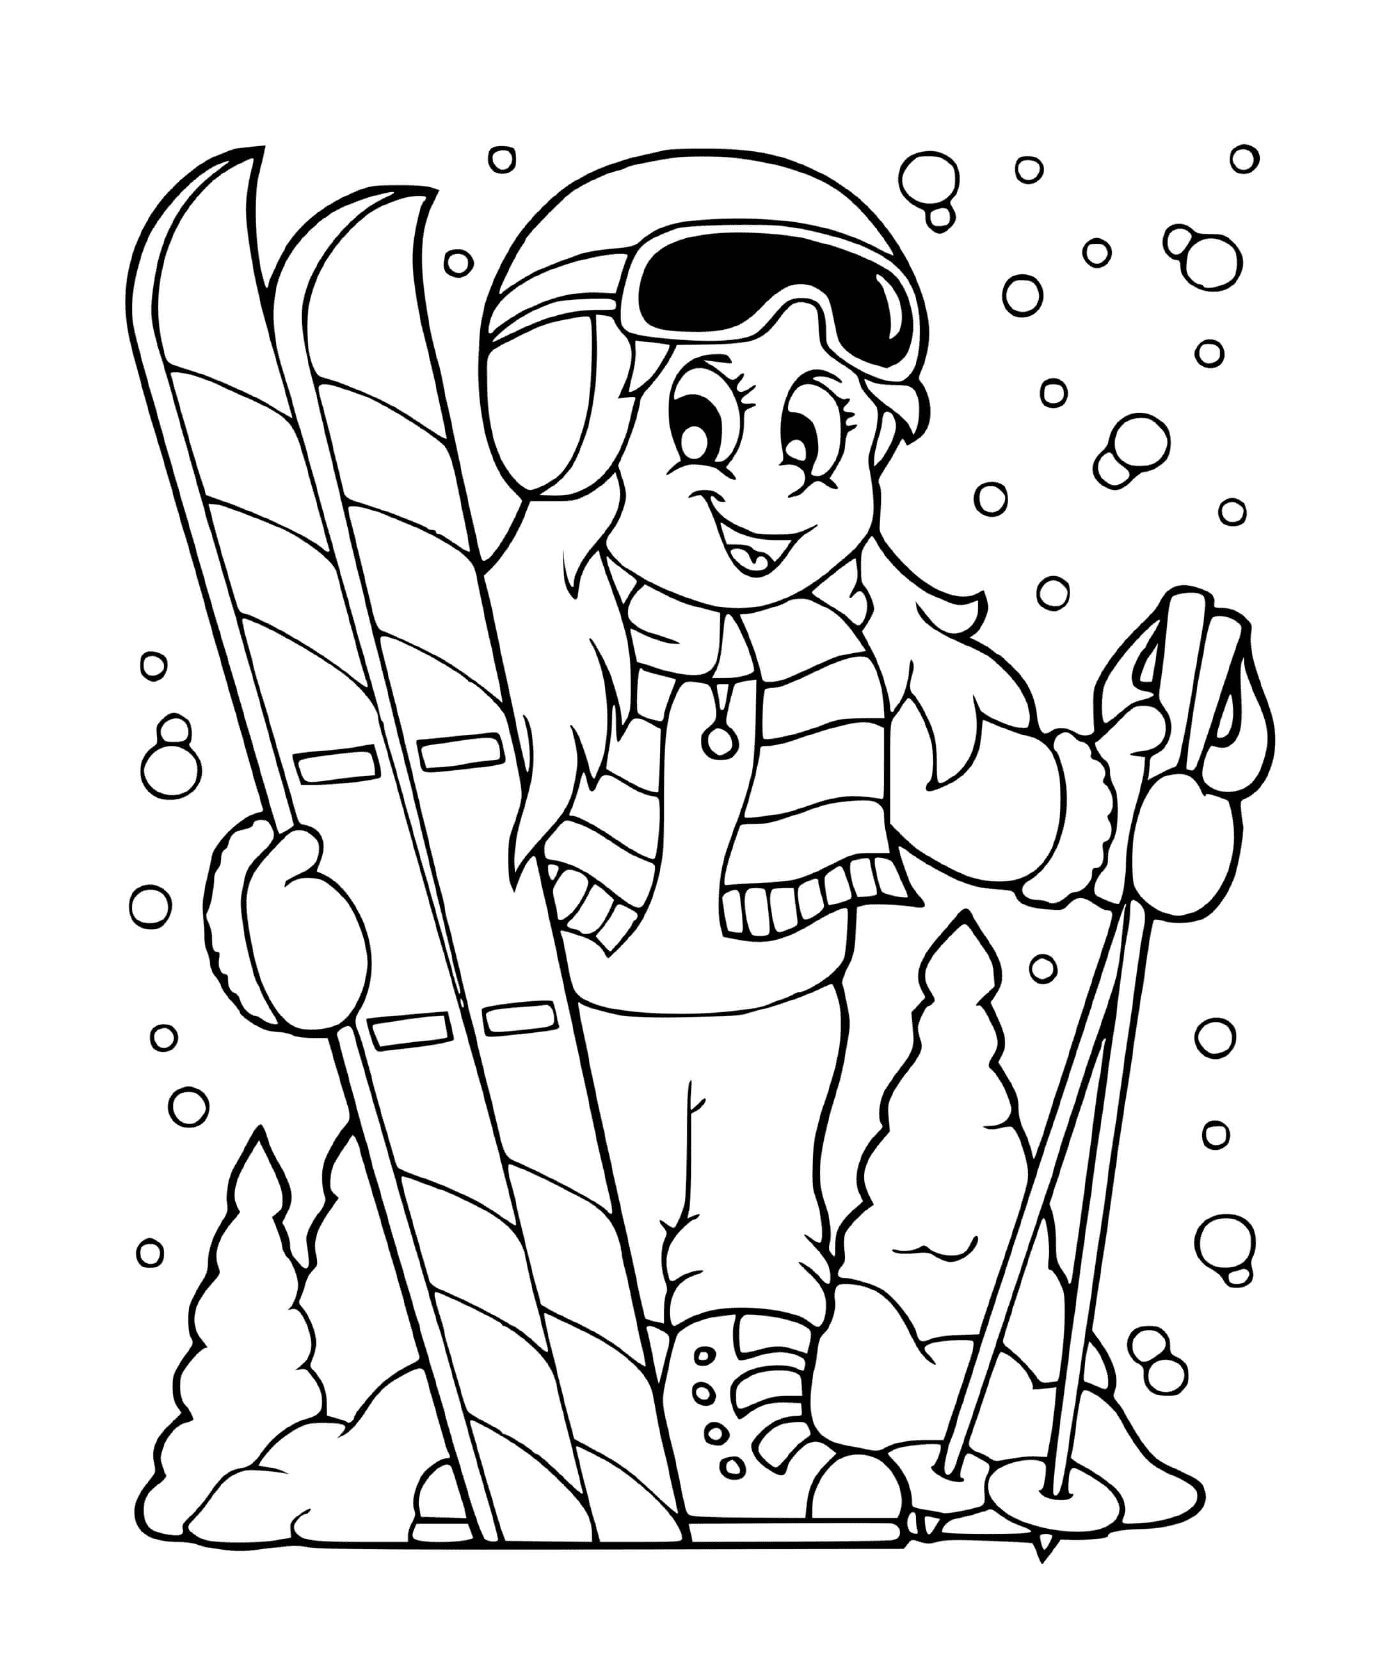  Girl skis alpine in winter 